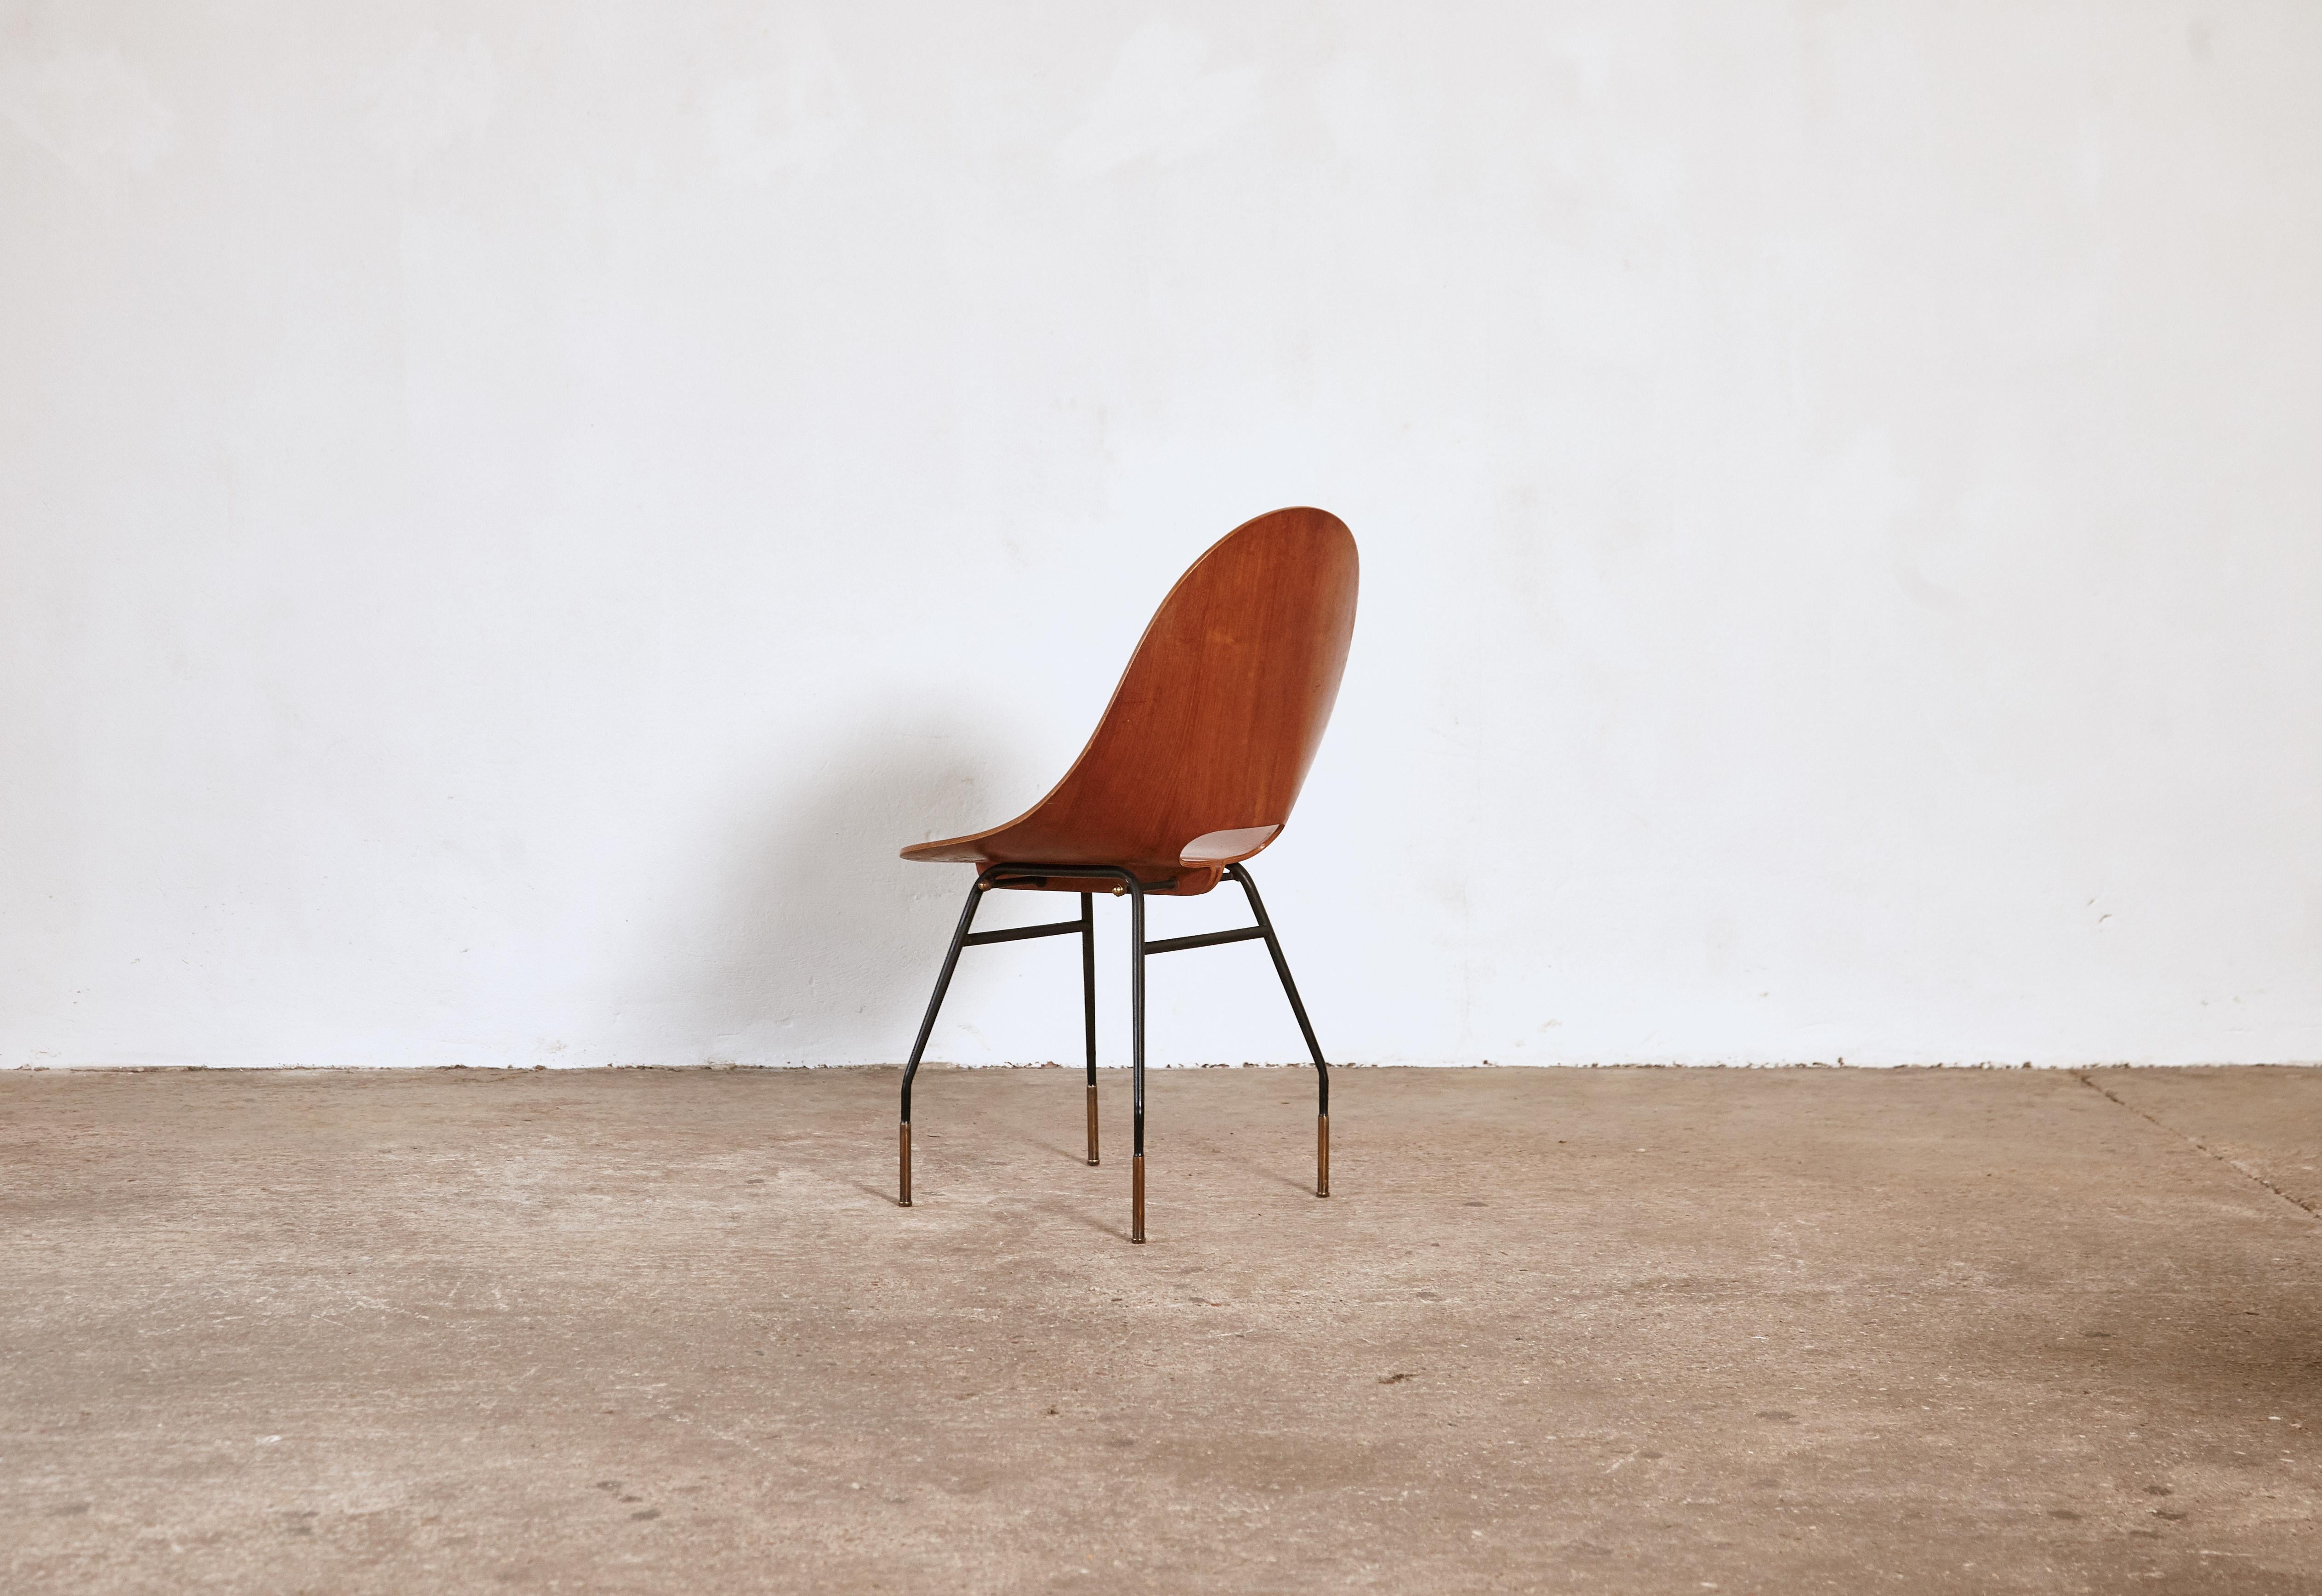 Italian Rare Societa Compensati Curvati Chair, Italy, 1950s For Sale